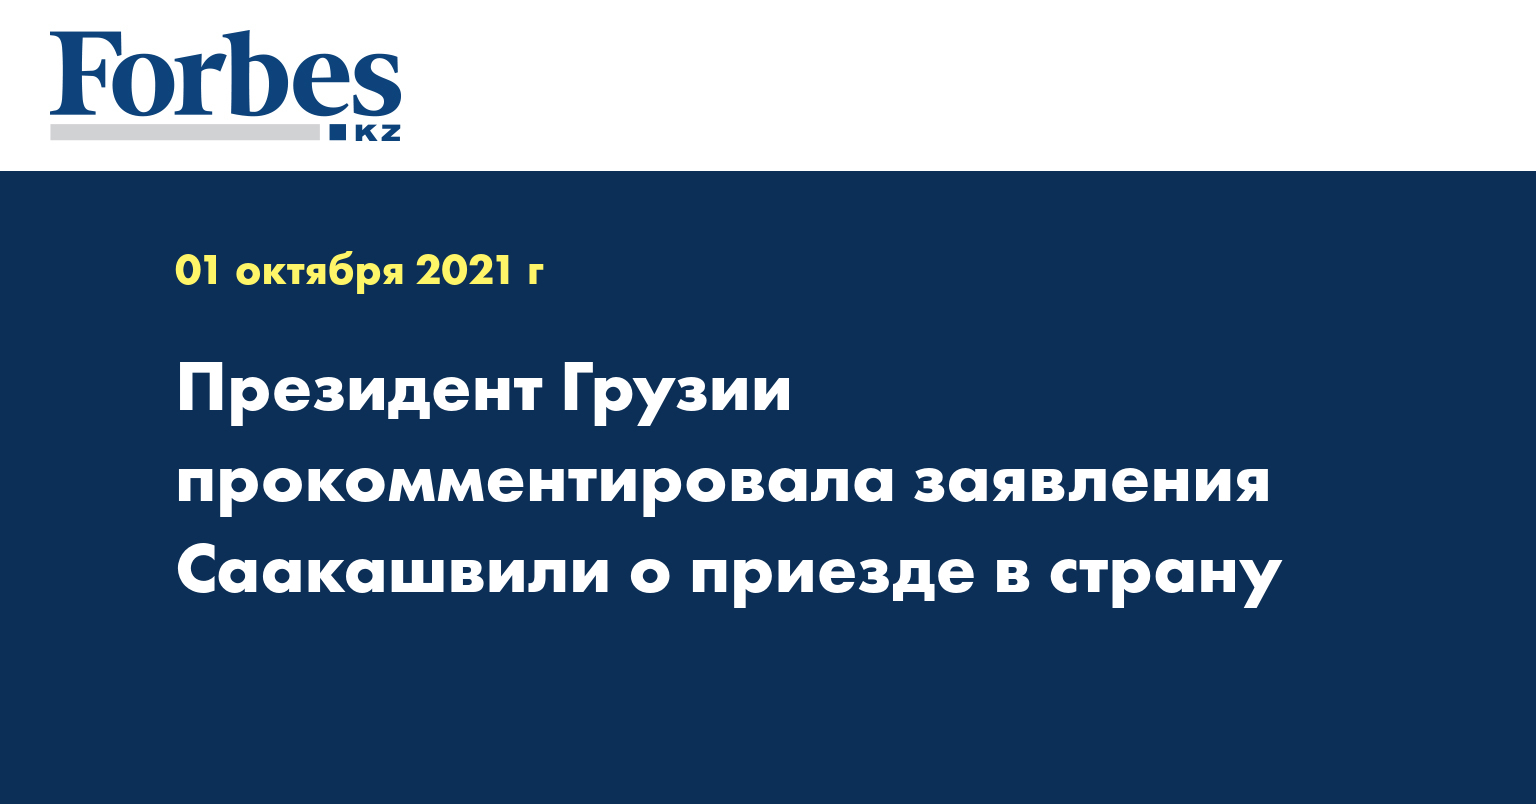 Президент Грузии прокомментировала заявления Саакашвили о приезде в страну